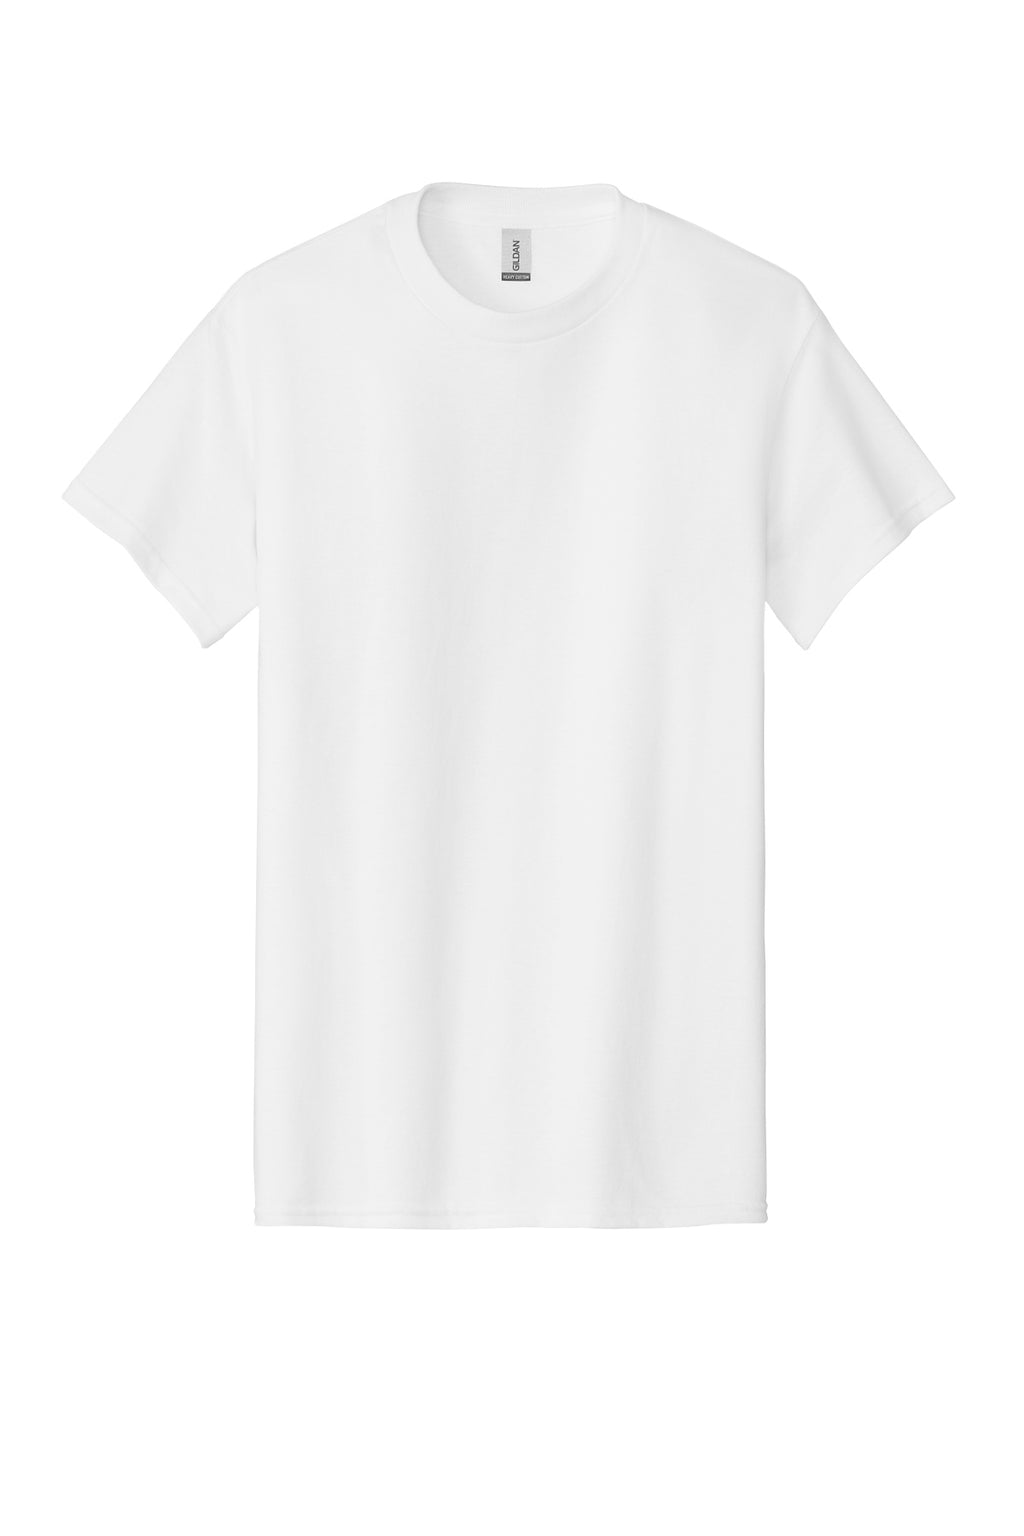 Gildan Mens/Unisex S/S Shirts White